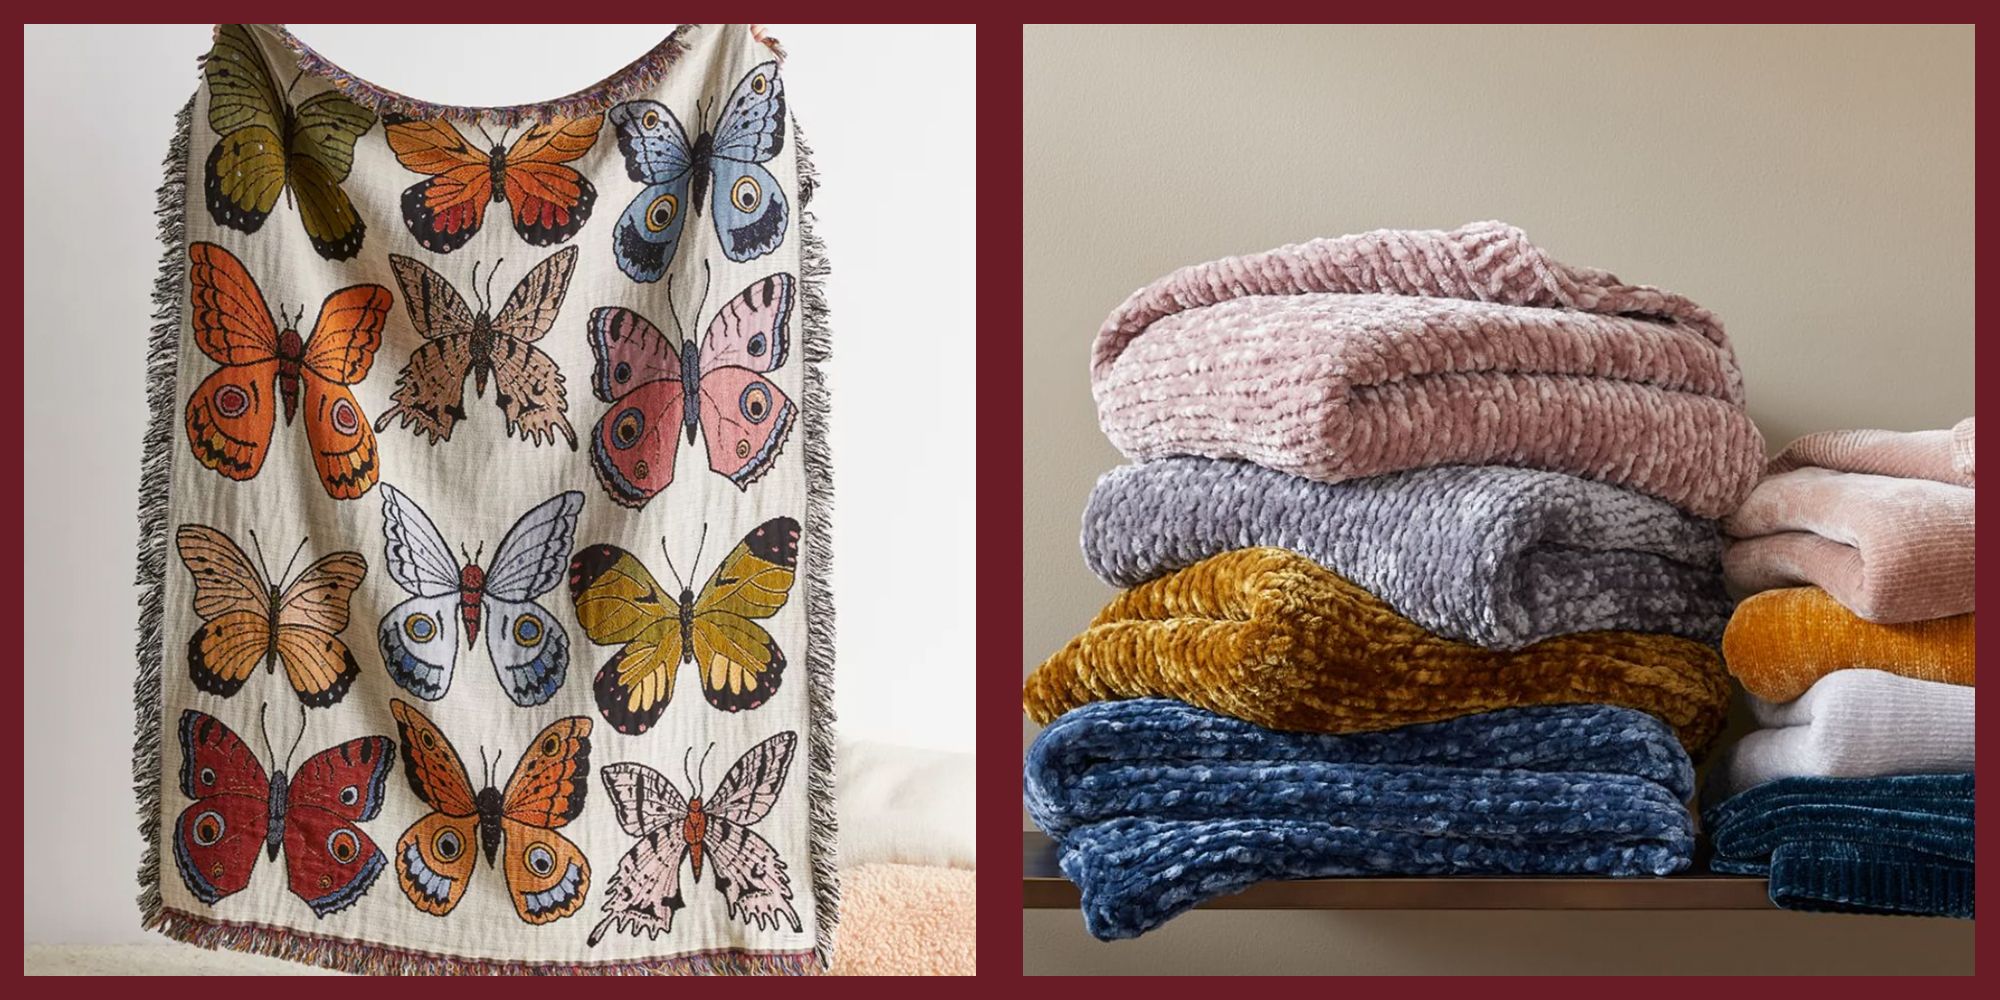 20 Best Throw Blankets 2022 - Luxury, Decorative Throw Blankets